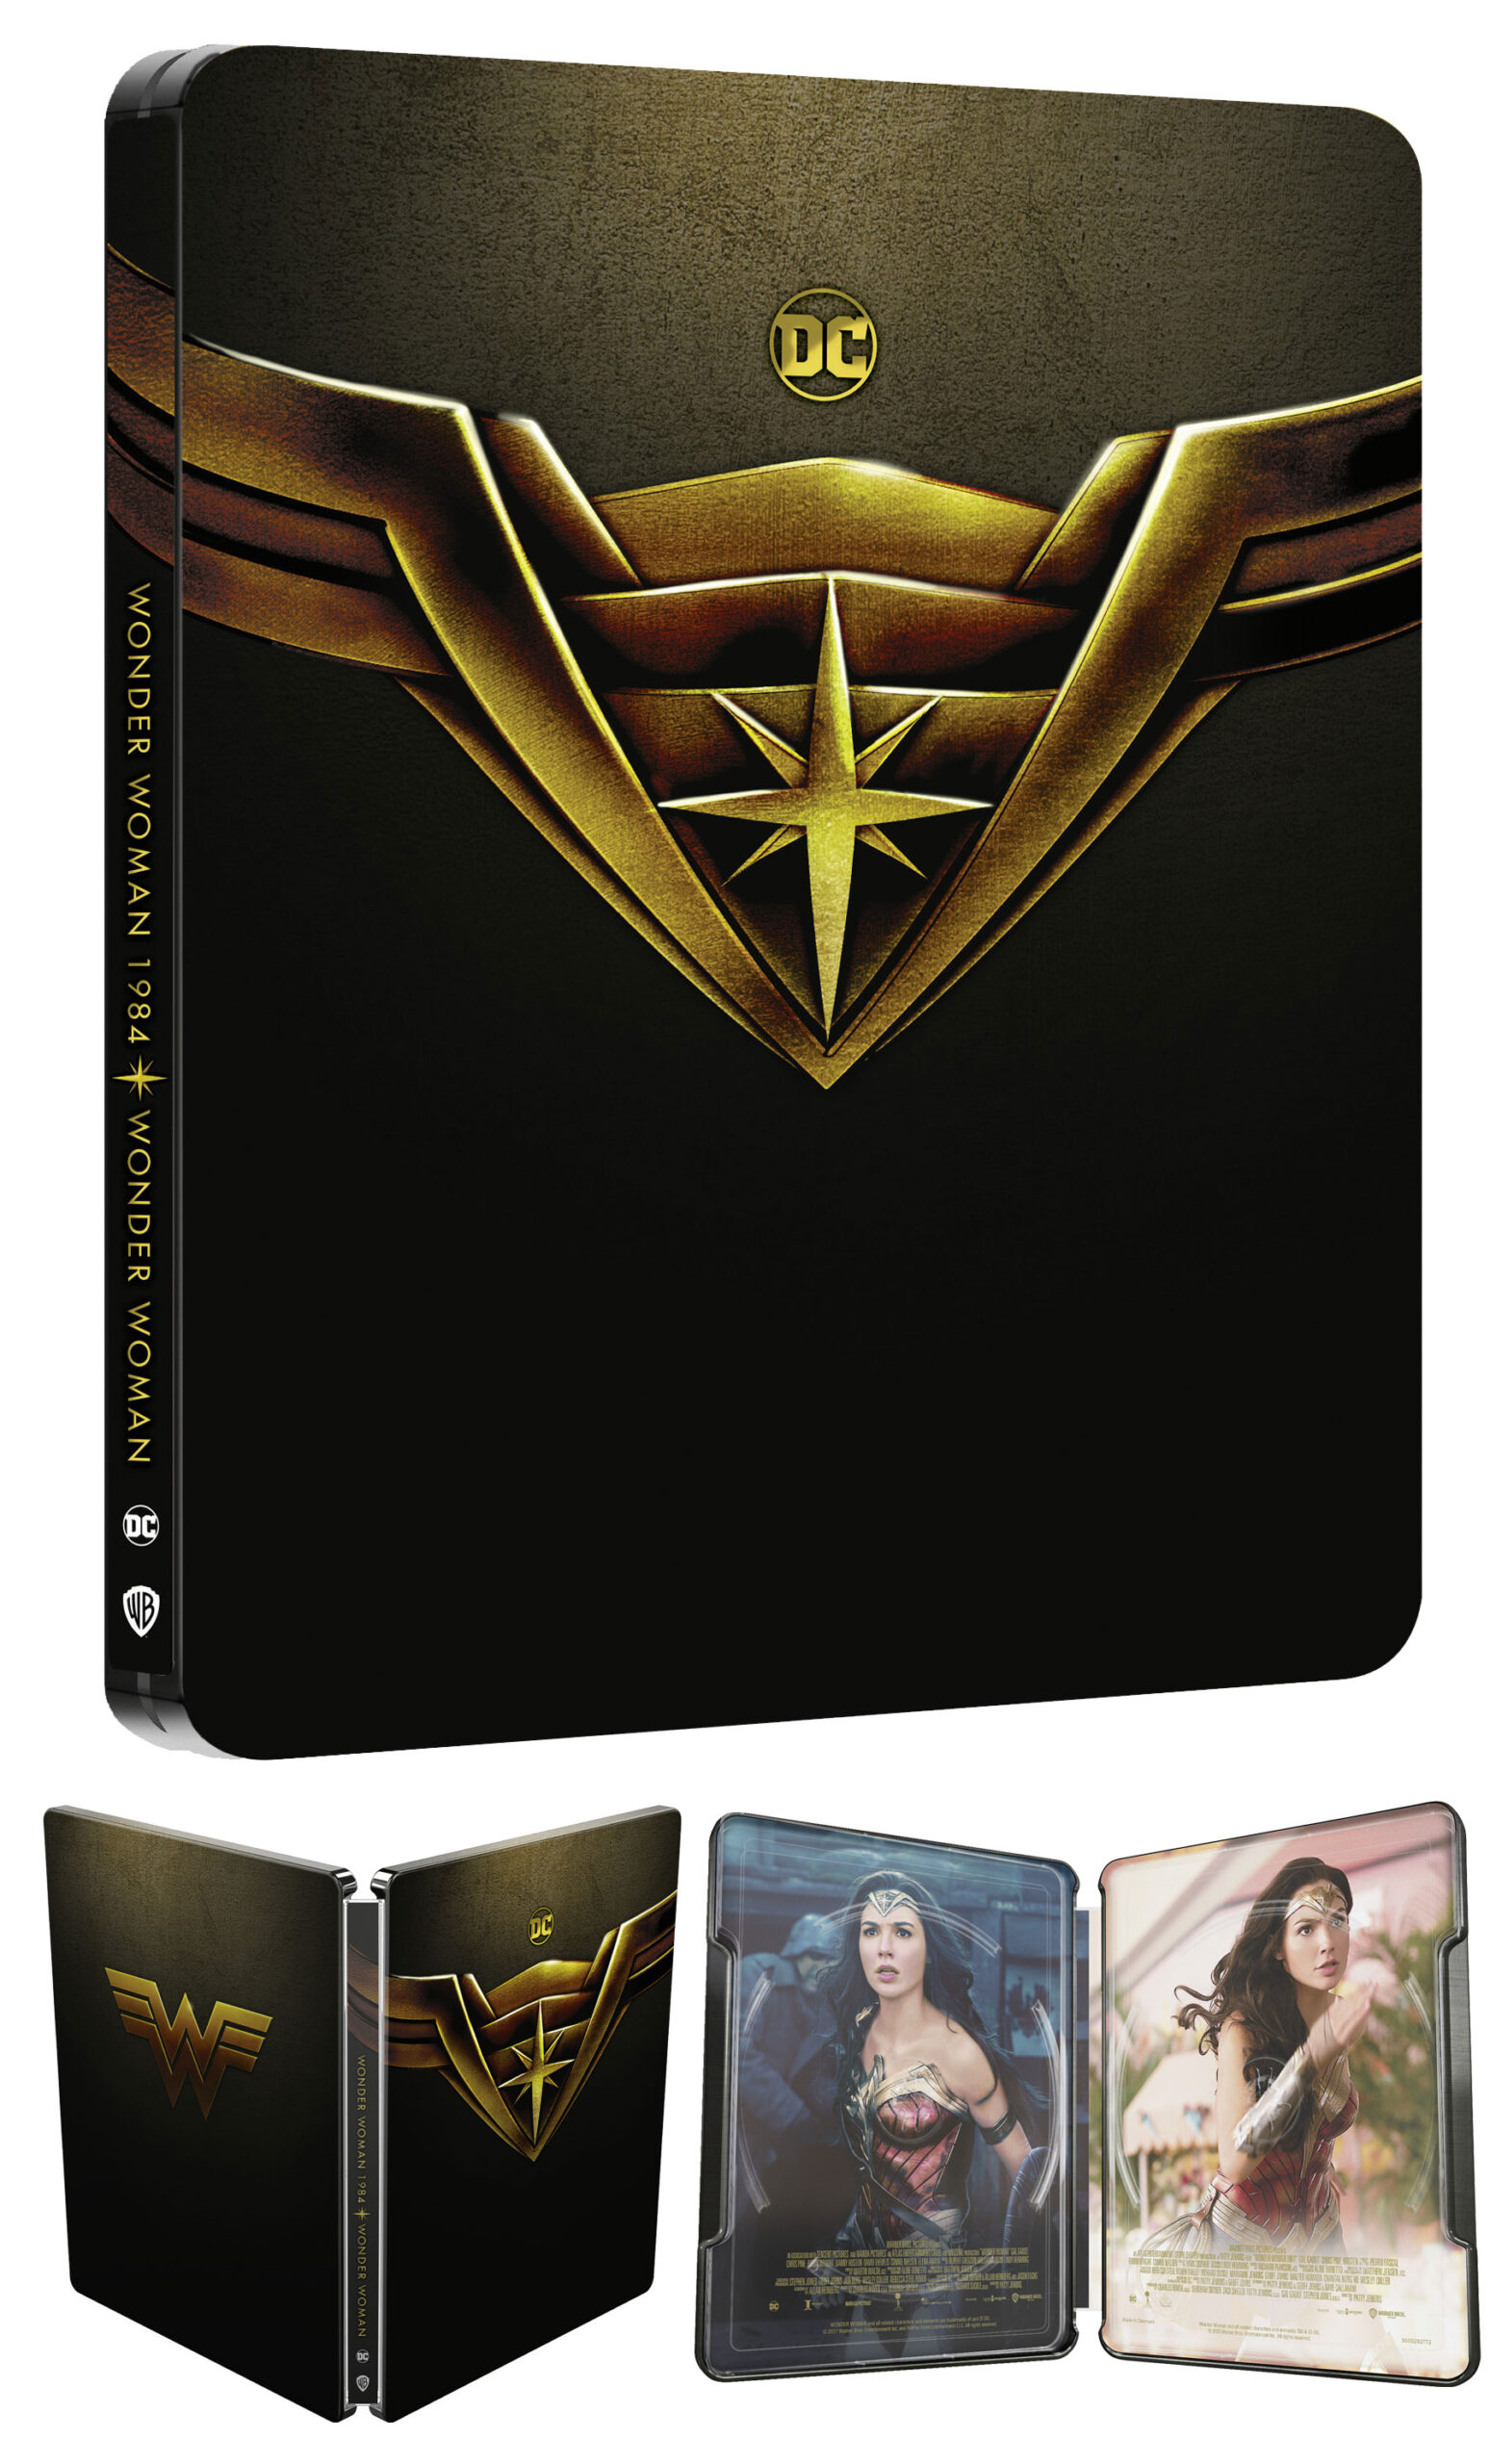 WONDER WOMAN in Steelbook 4K Ultra HDe Blu-ray